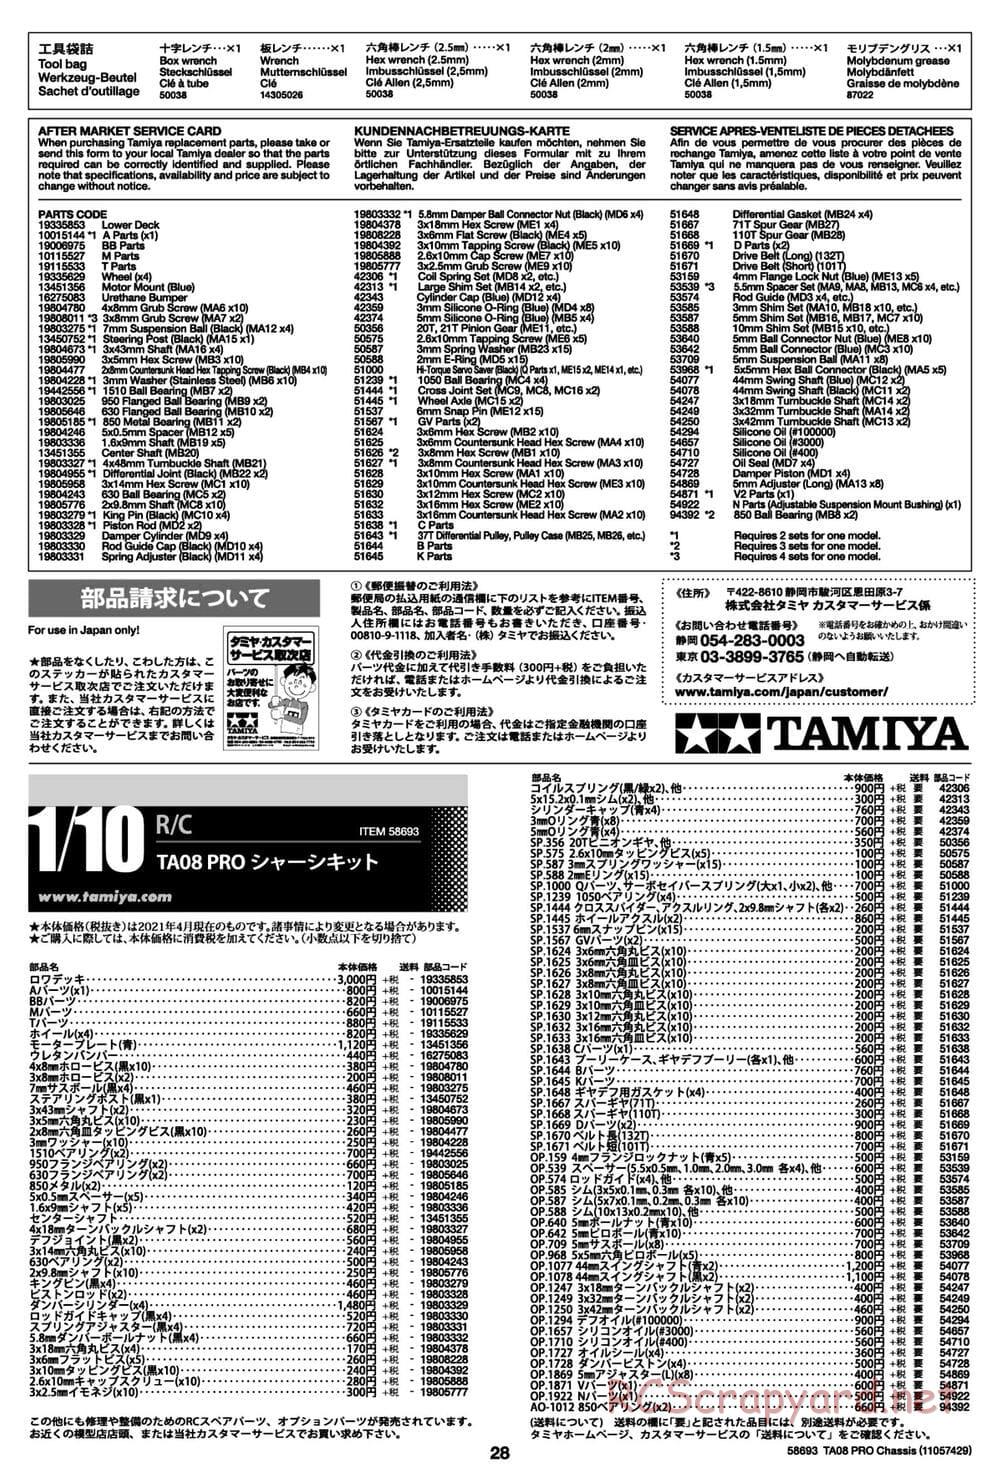 Tamiya - TA08 Pro Chassis - Manual - Page 28